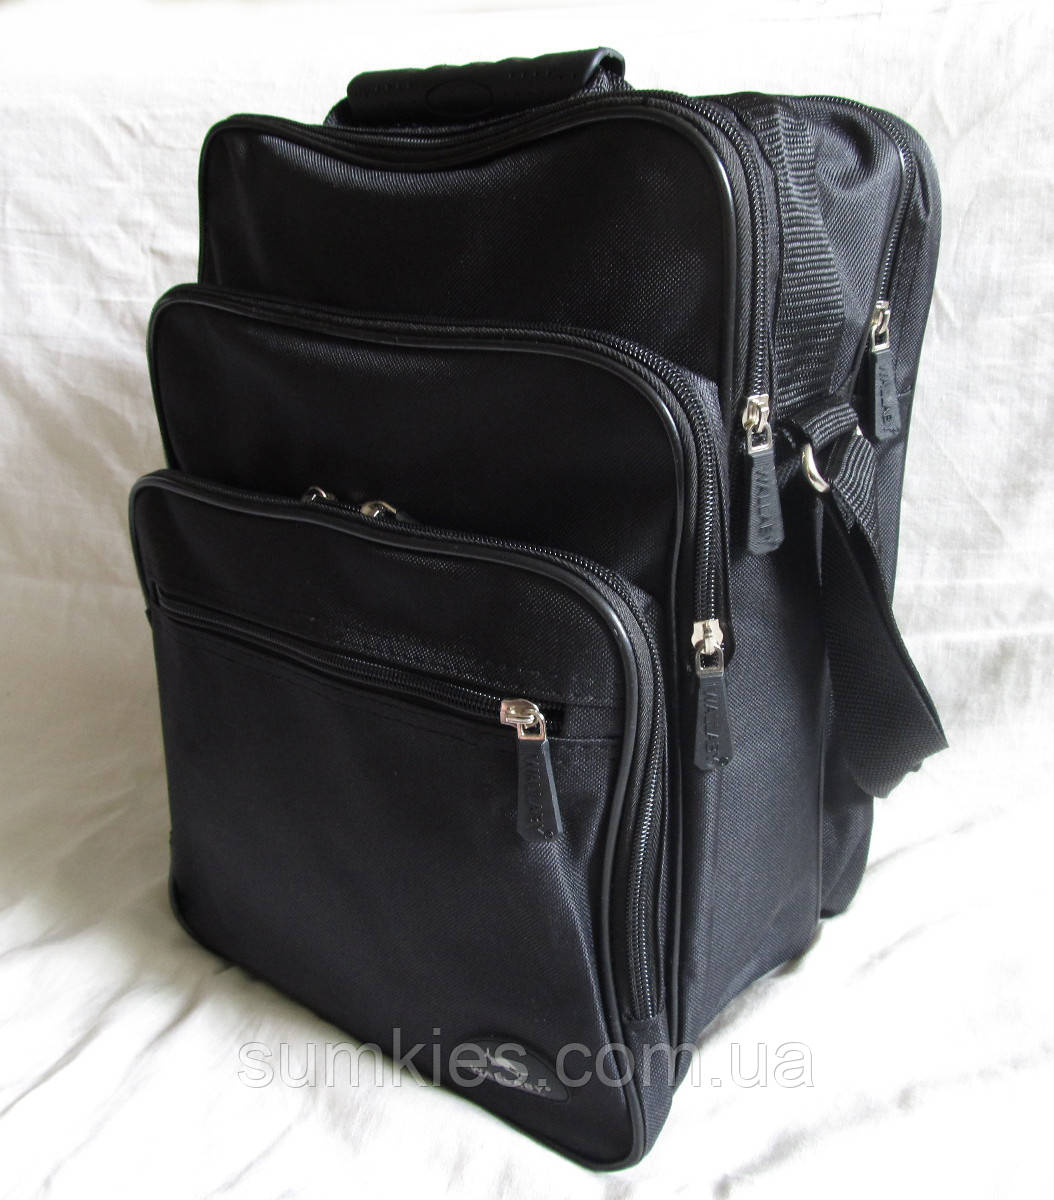 Чоловіча сумка es2281 чорна через плече месенджер папка портфель А4 35х26см